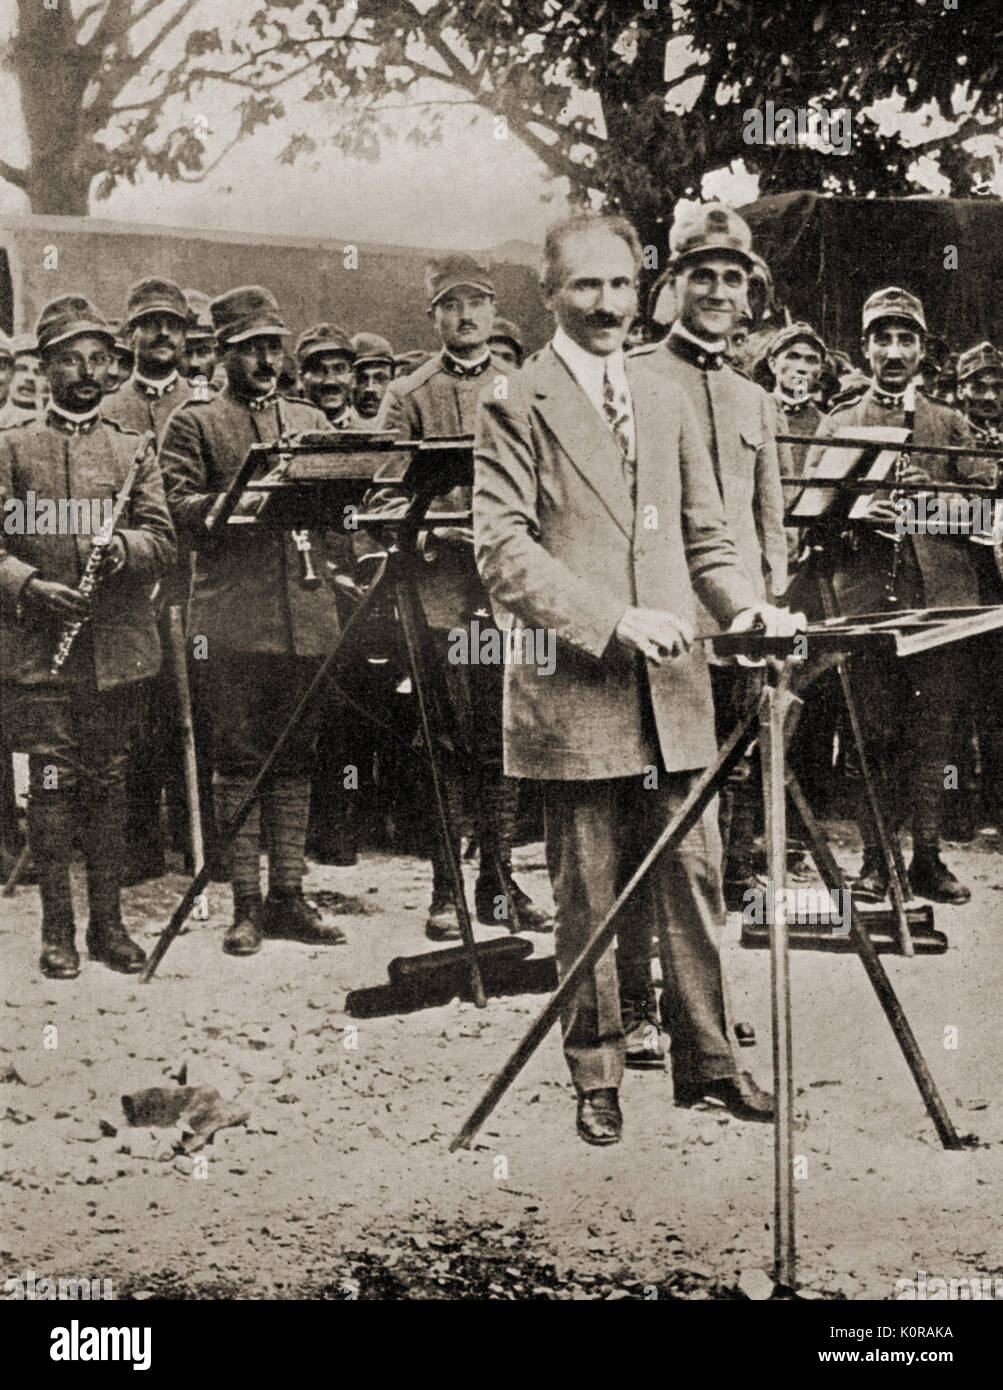 Arturo Toscanini, au cours de la Première Guerre mondiale, la conduite de concert pour les troupes italiennes. Le voici avec une musique militaire. Maestro italien, 1867-1957 Banque D'Images